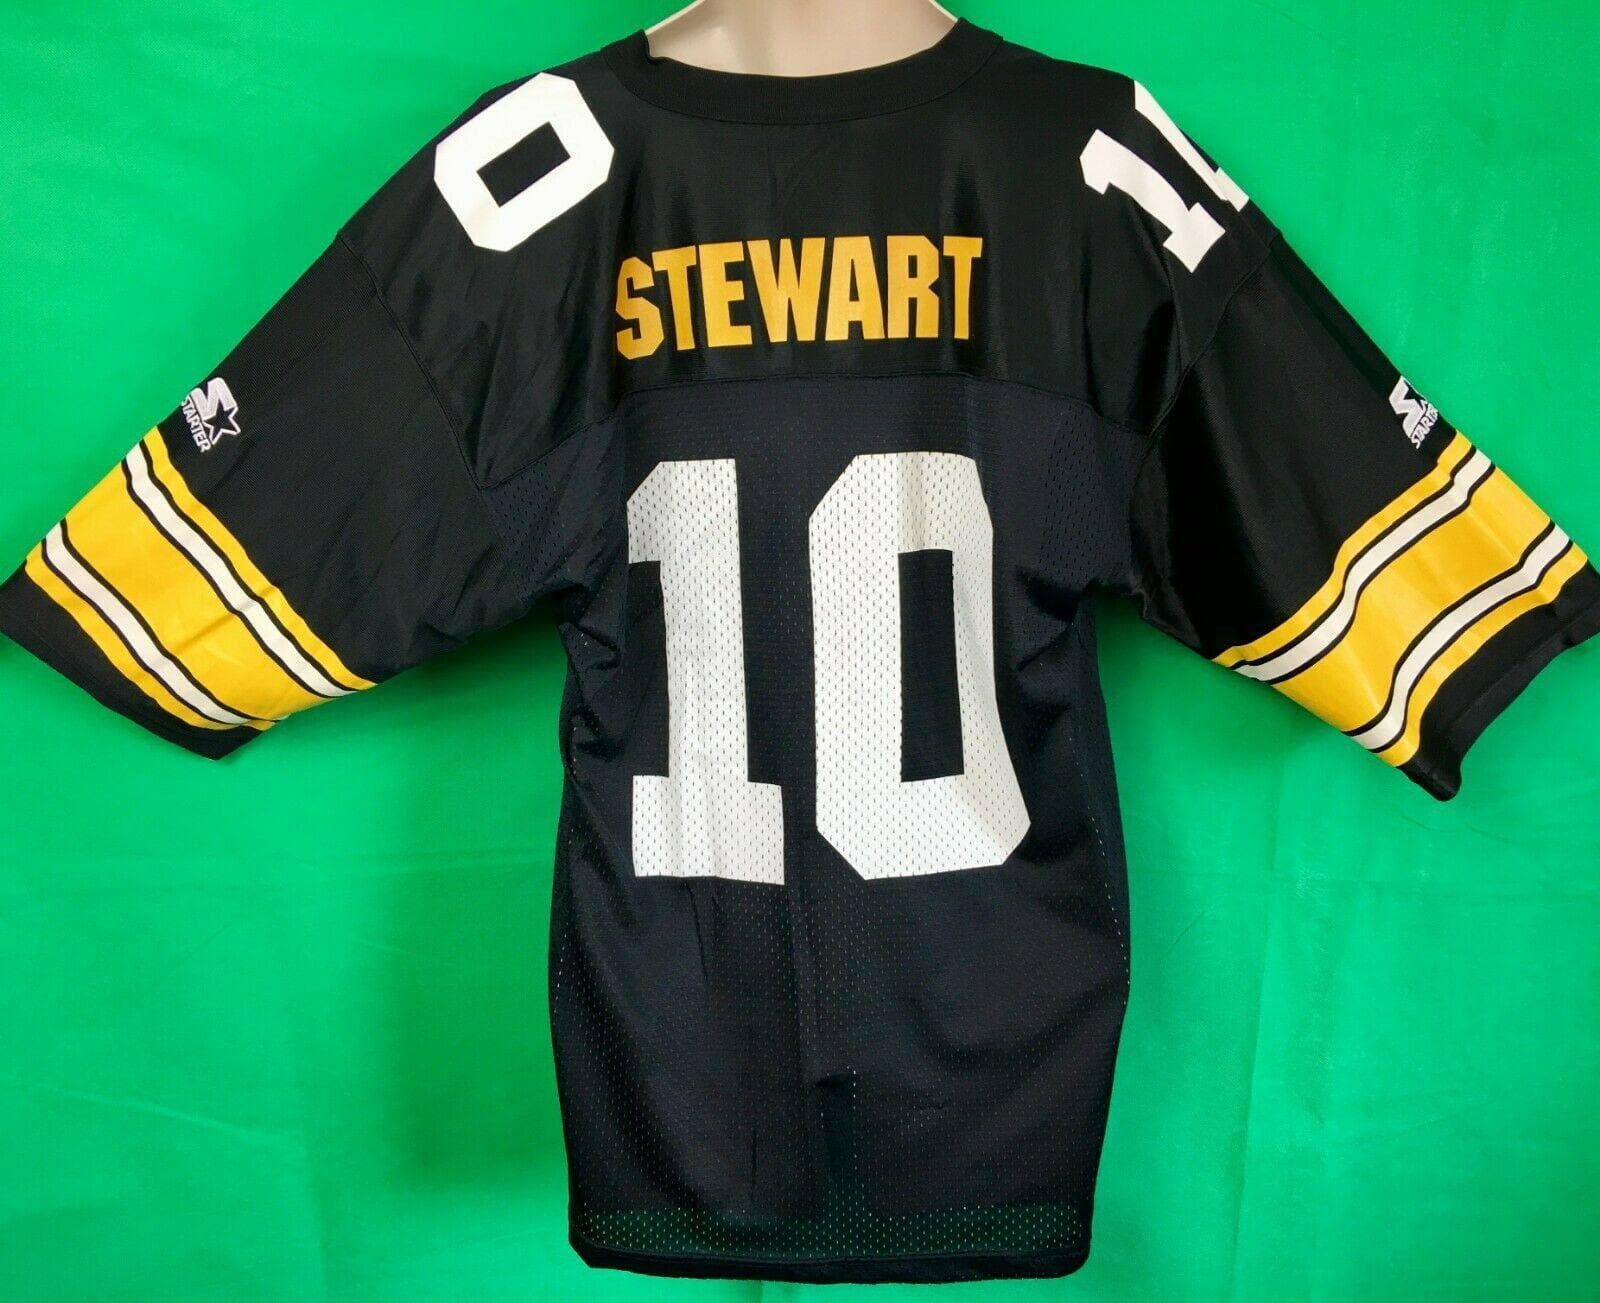 NFL Pittsburgh Steelers Kordell Stewart #10 Starter Vintage Jersey Men's Large